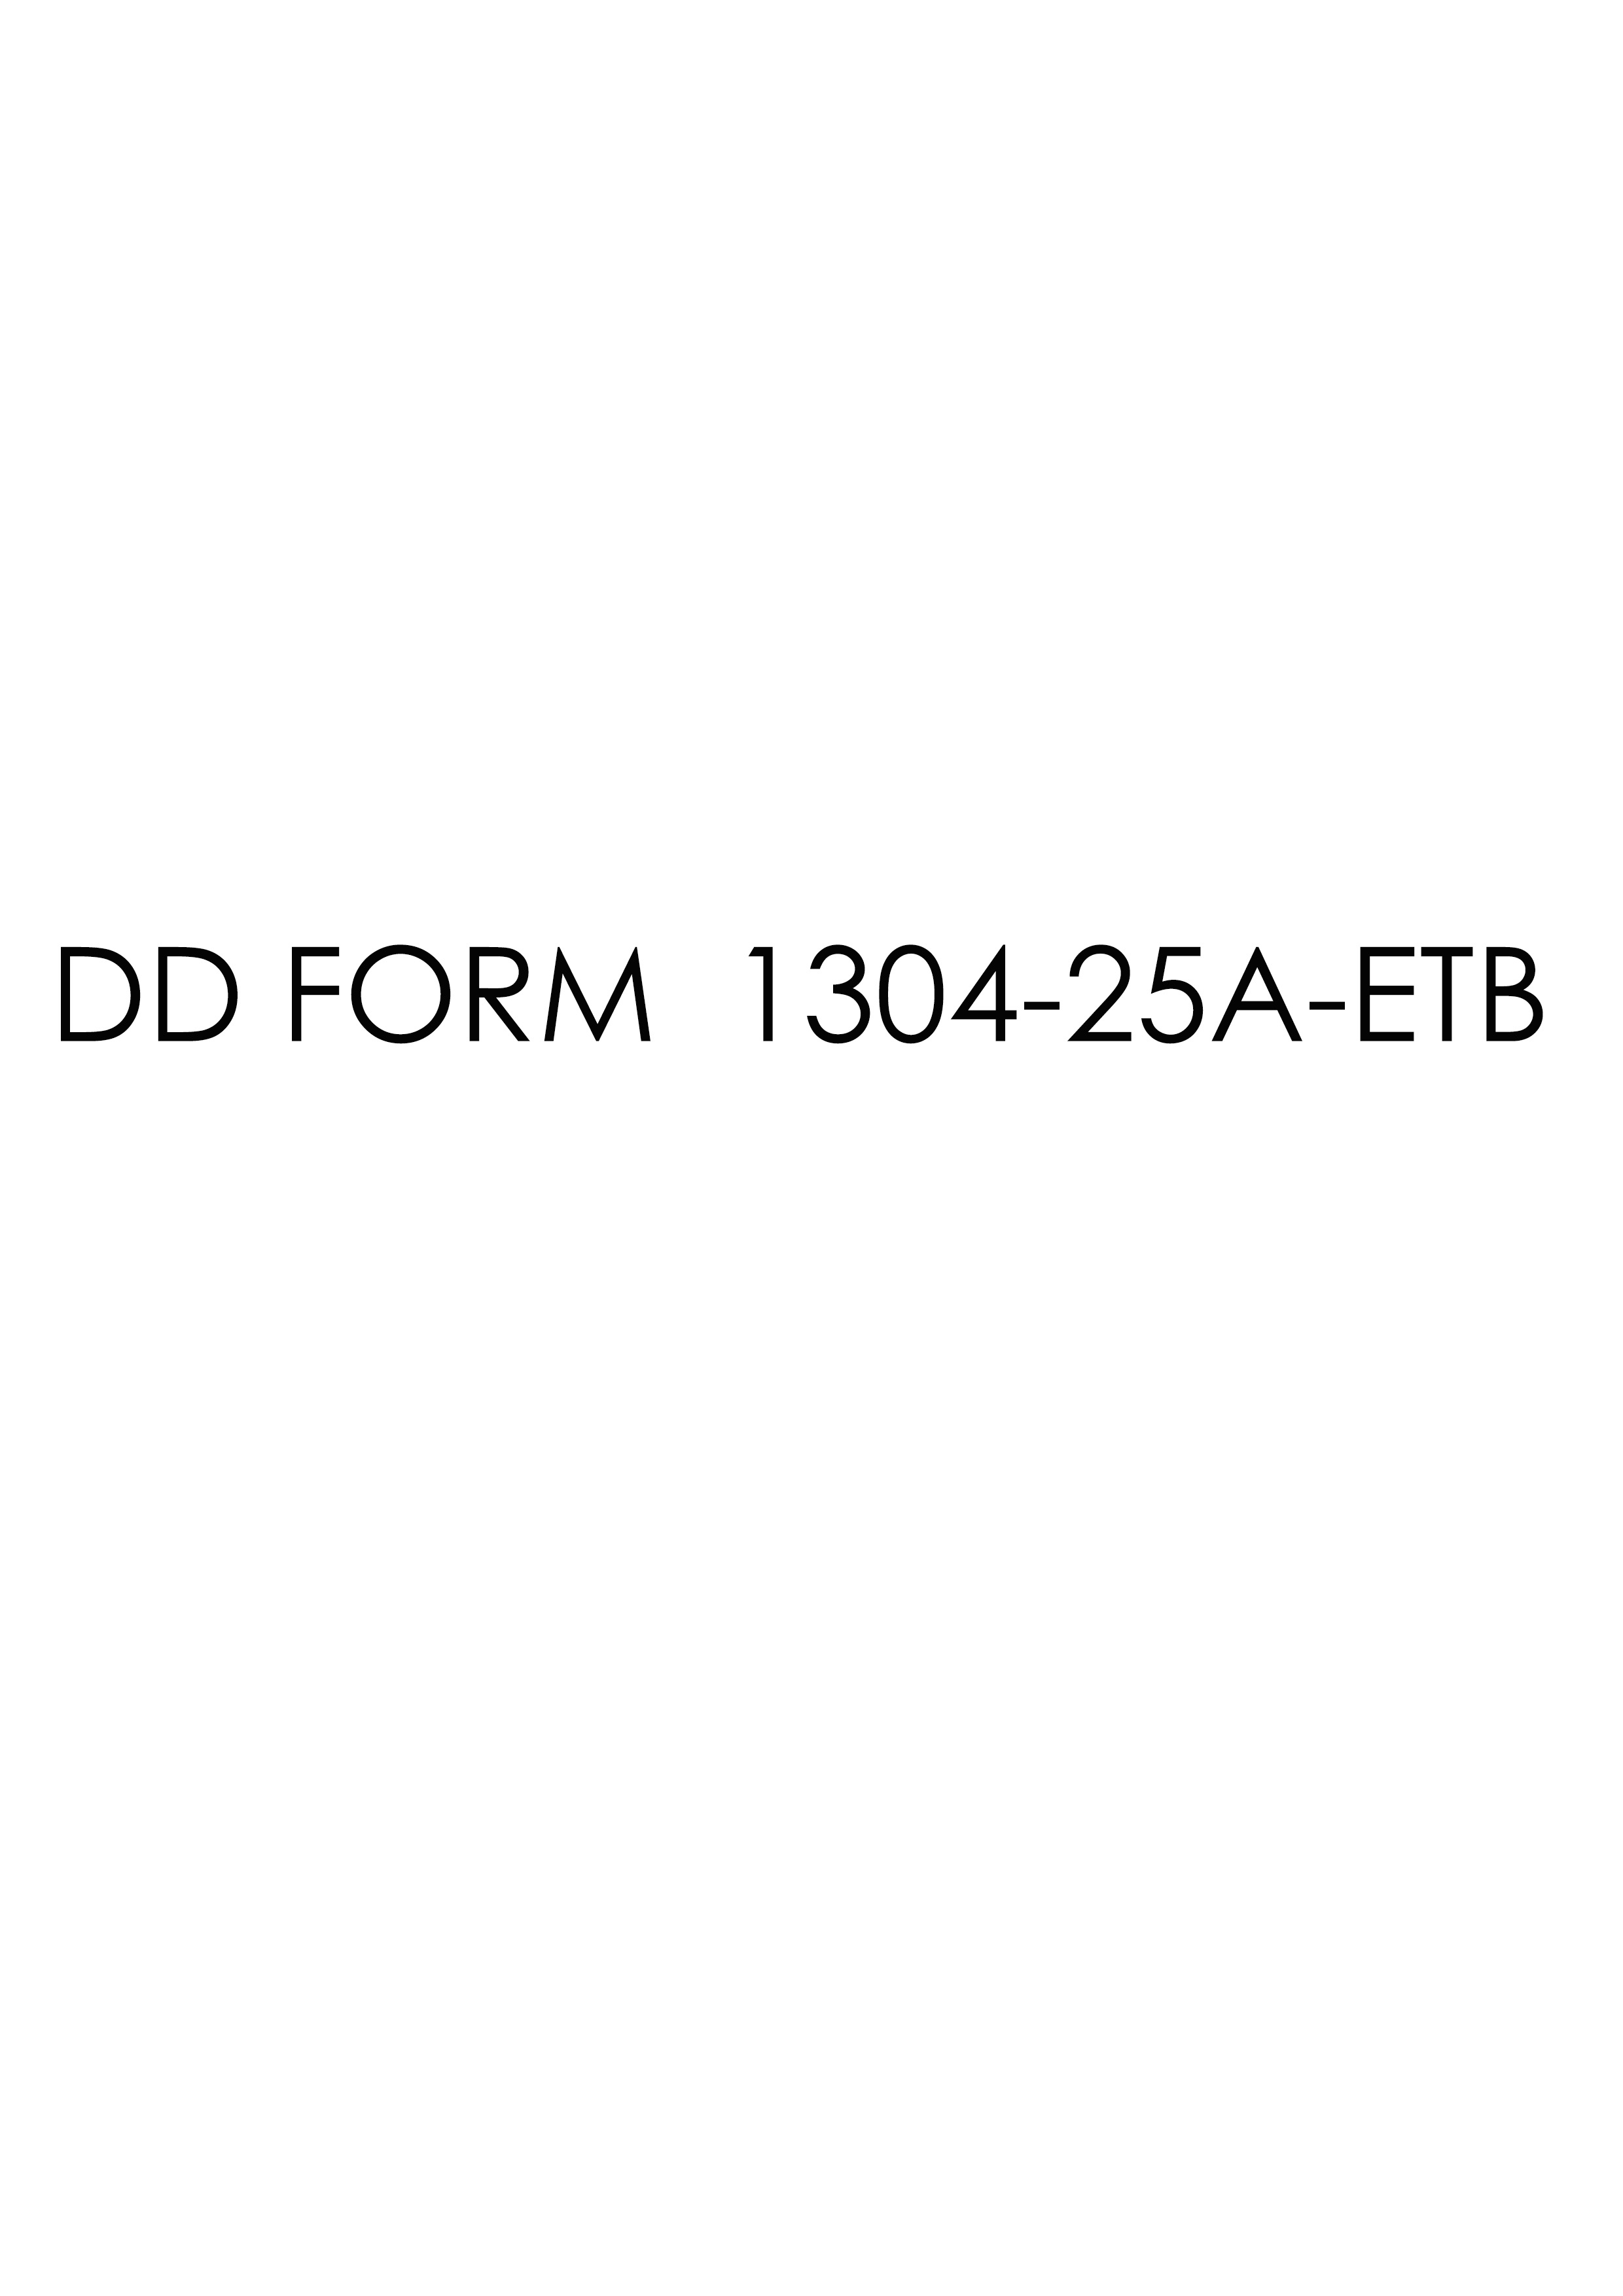 Download dd Form 1304-25A-ETB